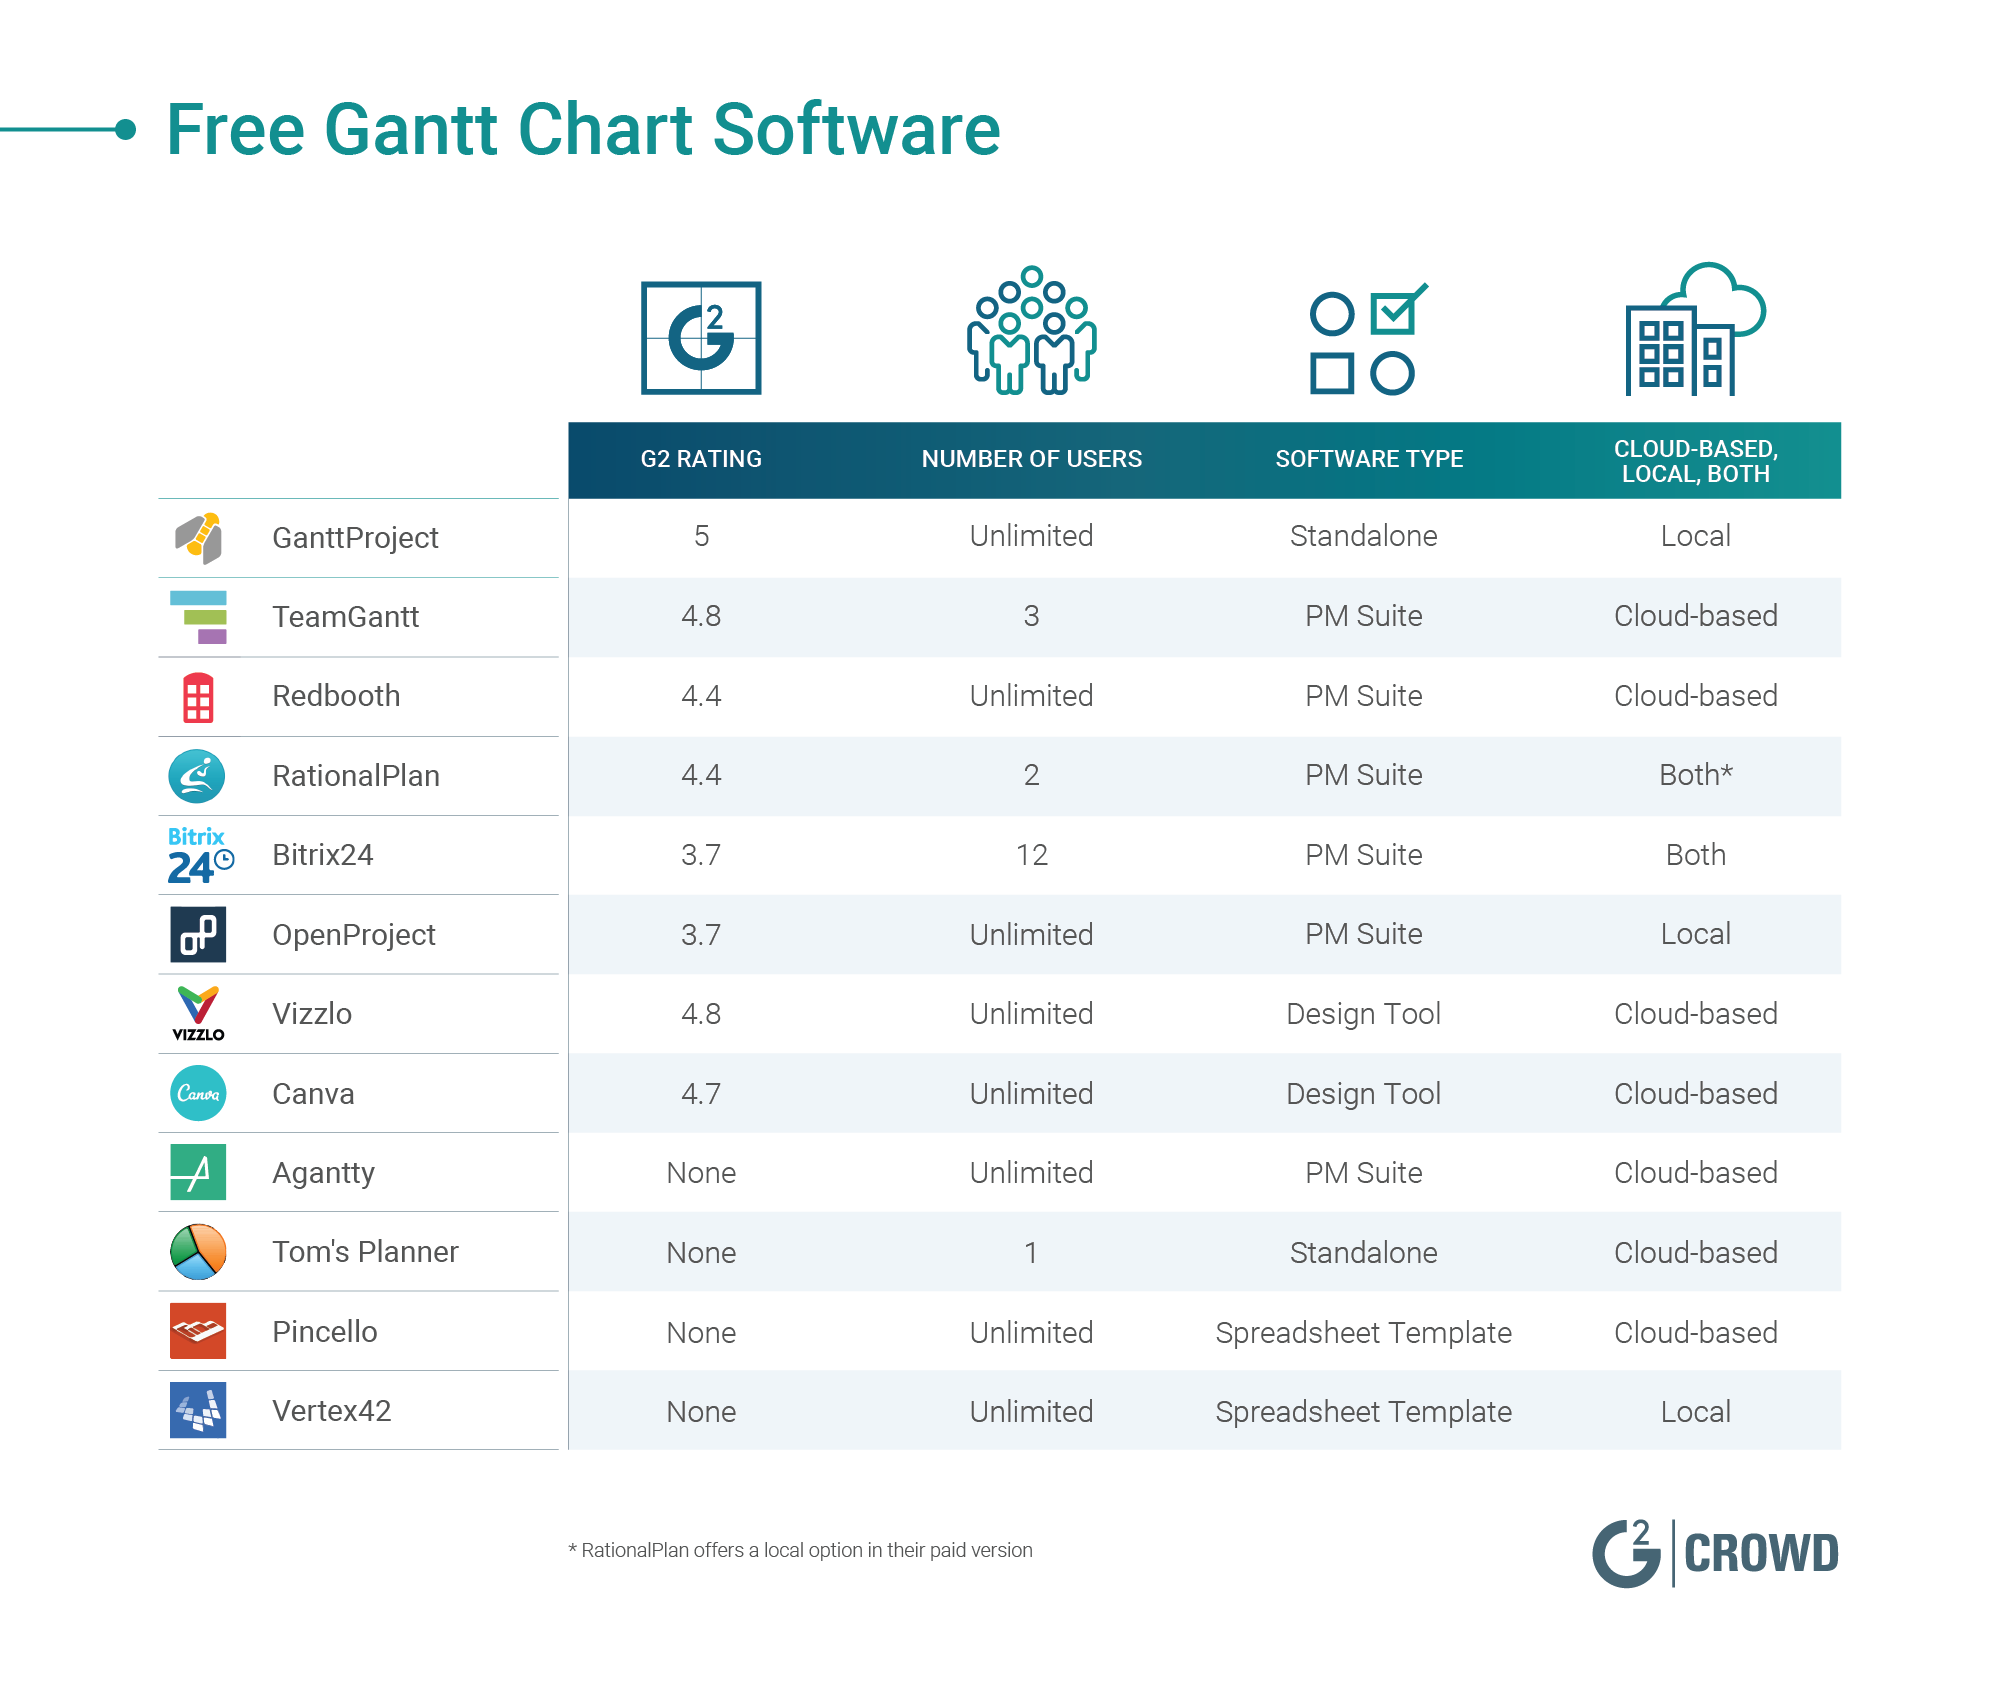 Free Gantt Chart Software